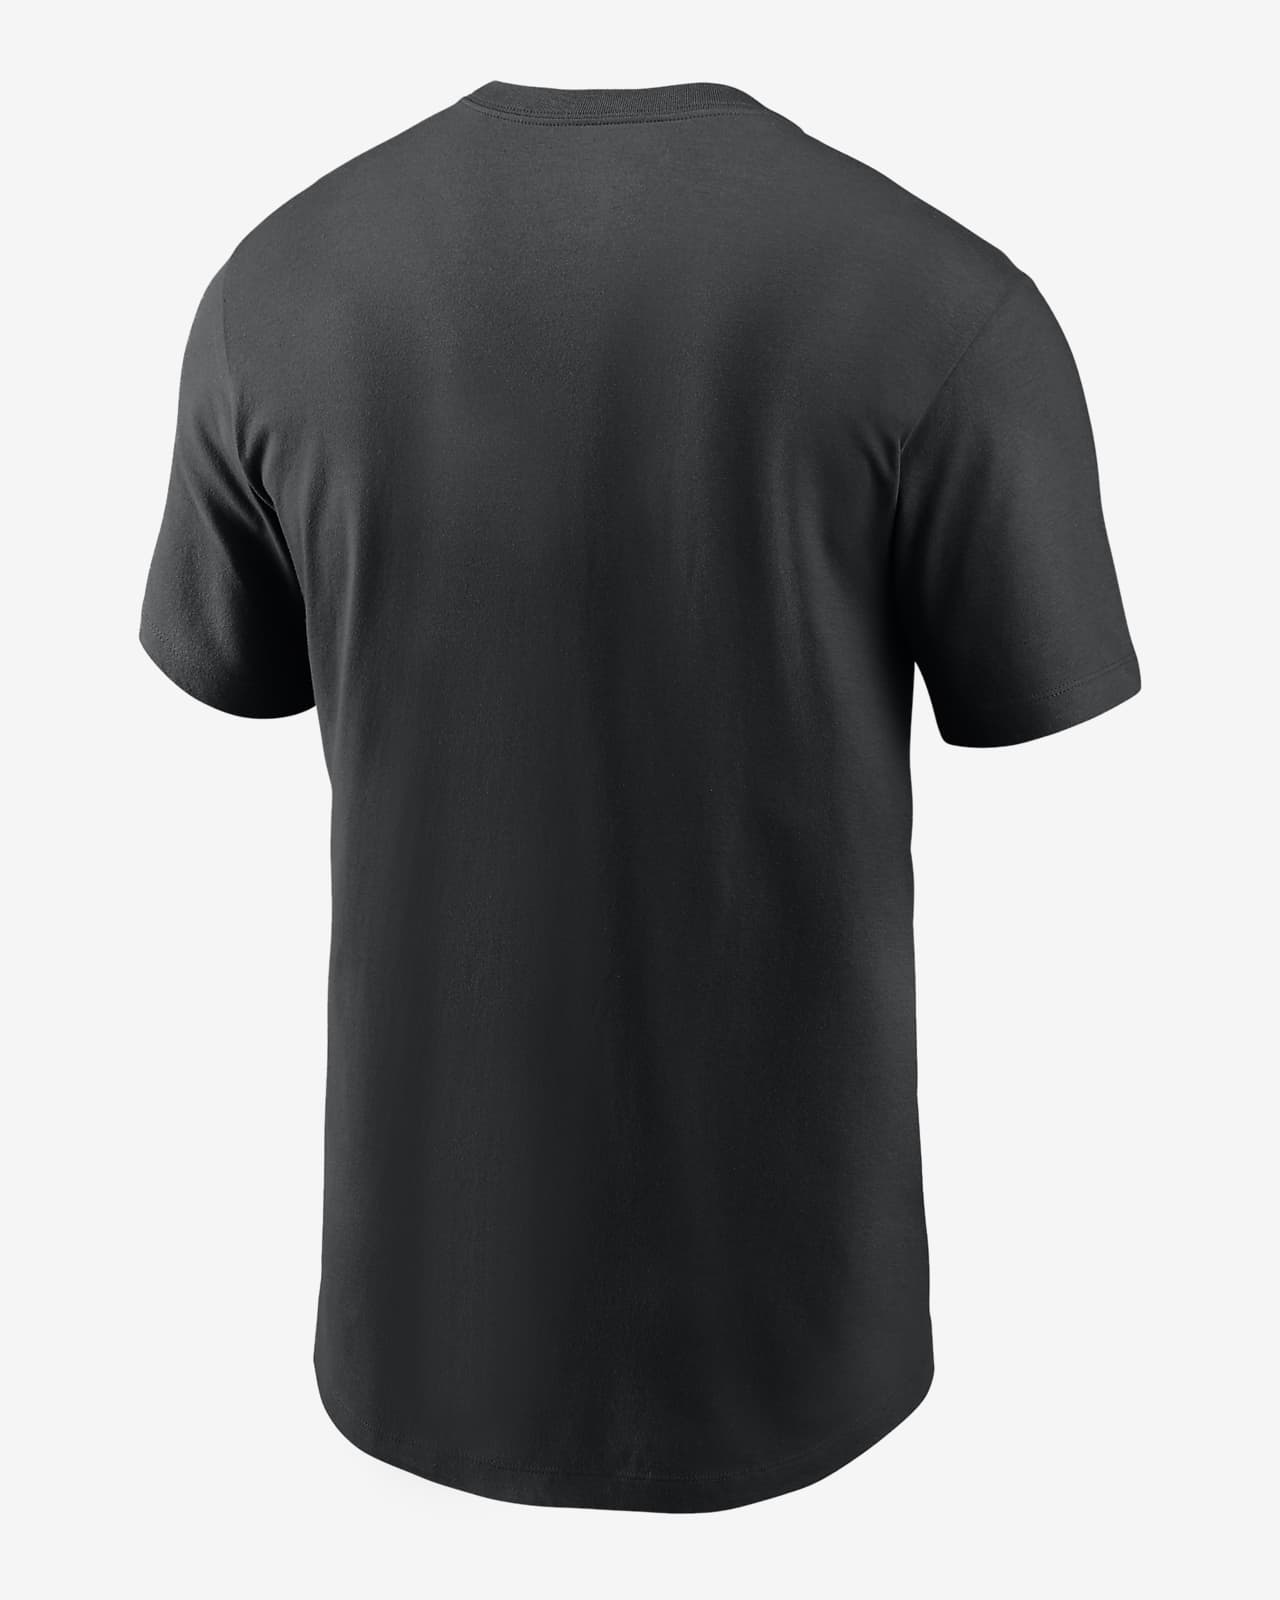 Nike Camo Logo (MLB St. Louis Cardinals) Men's T-Shirt.